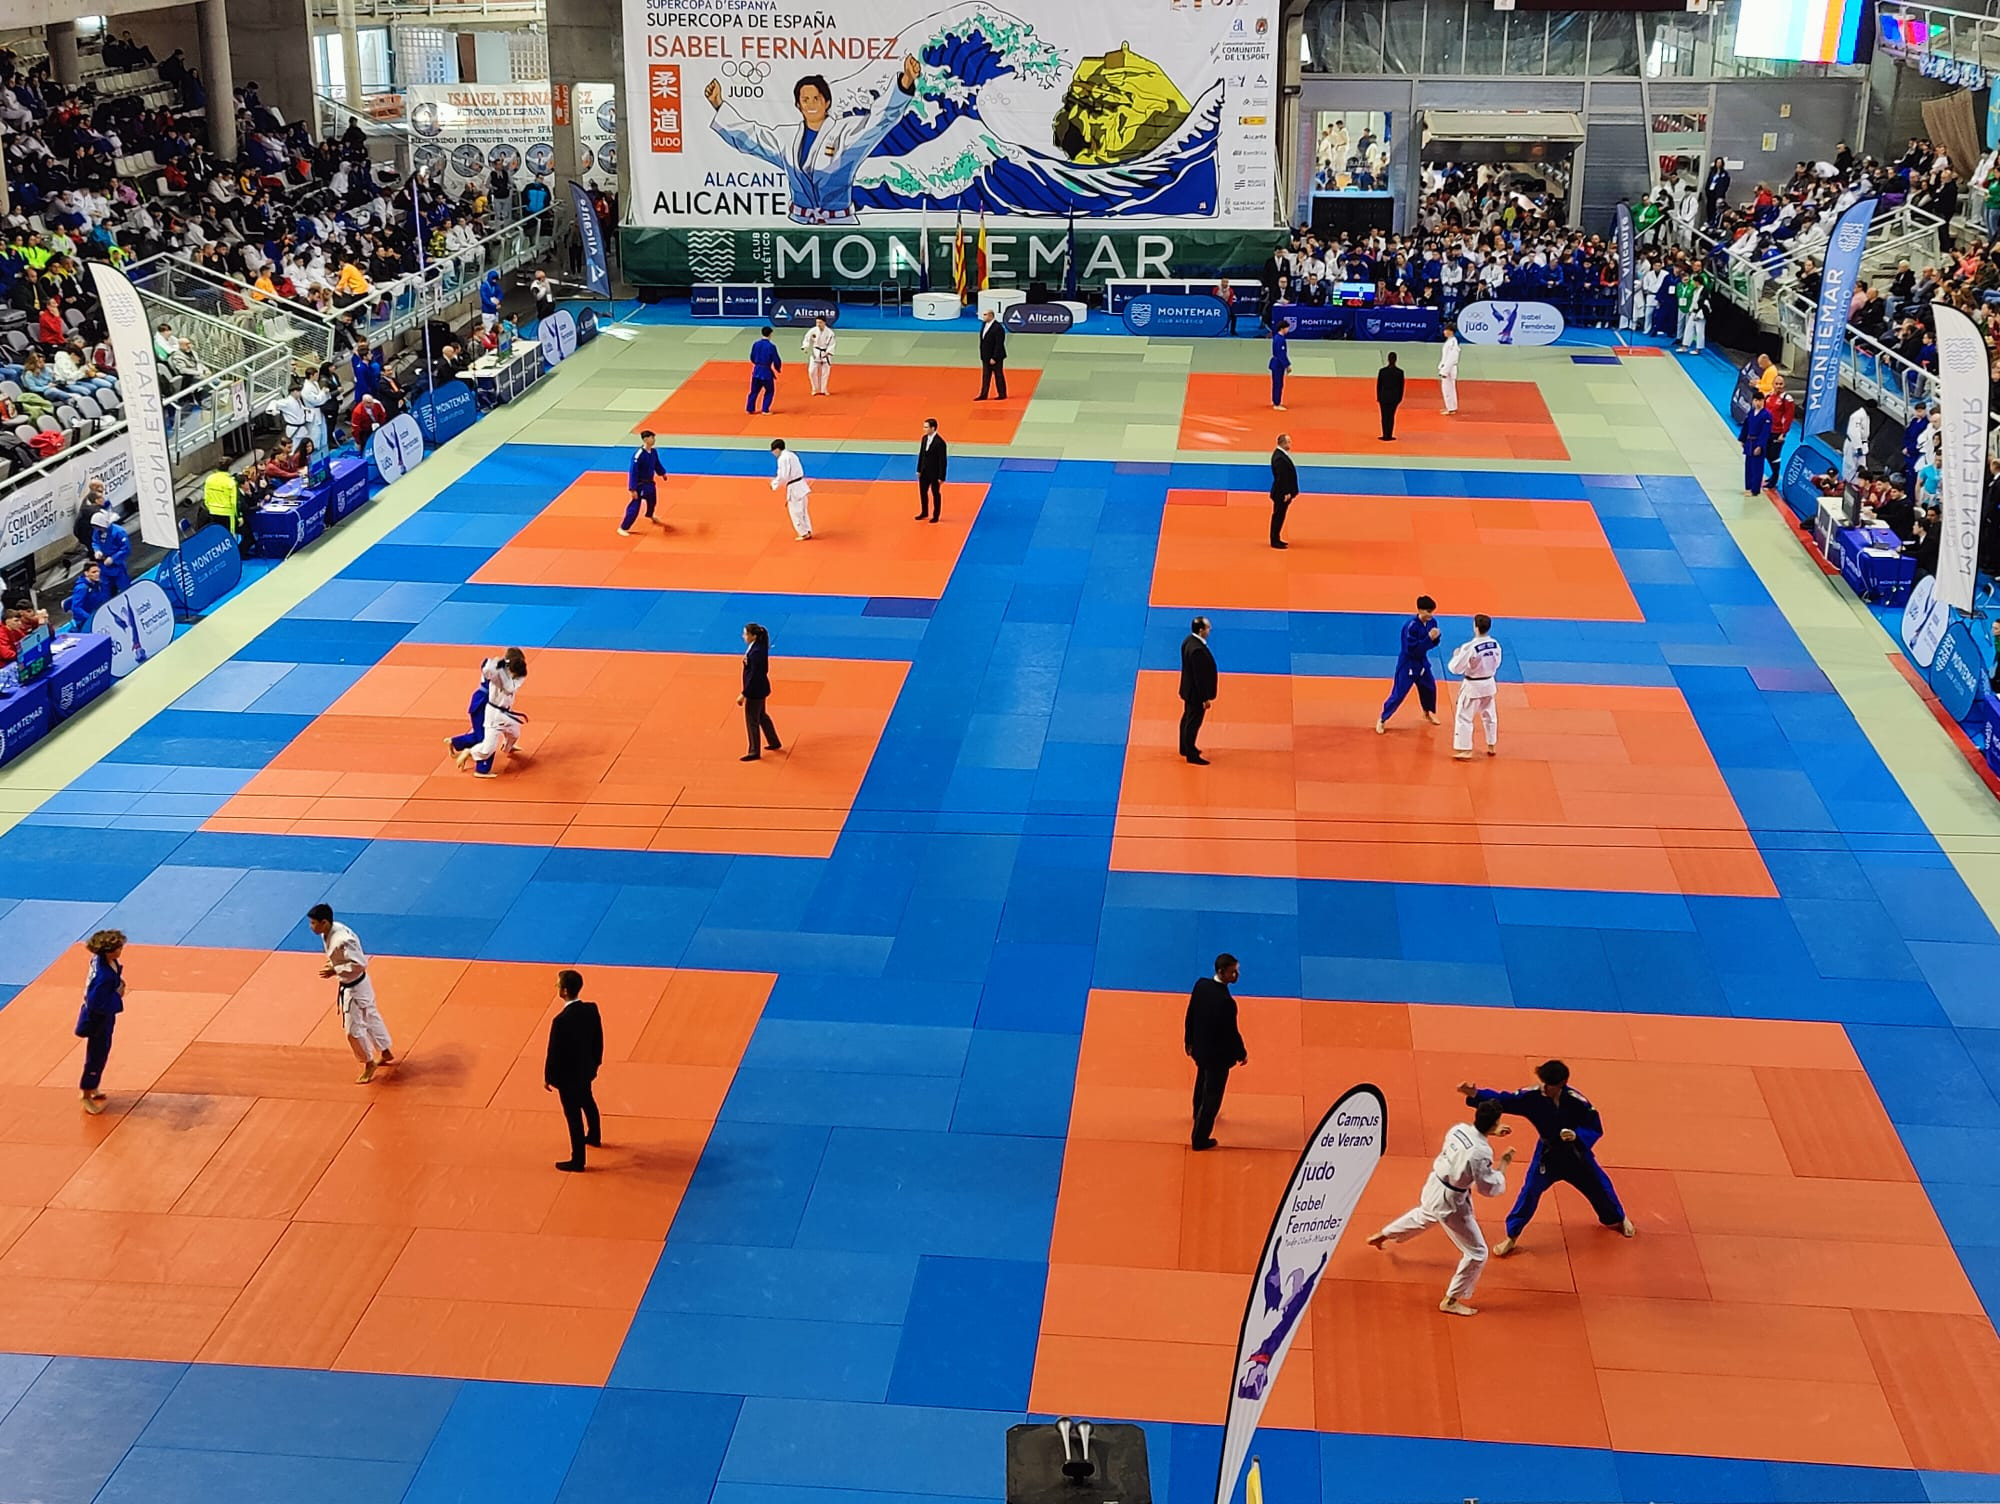  La fiesta del judo nacional cobra vida en Alicante 